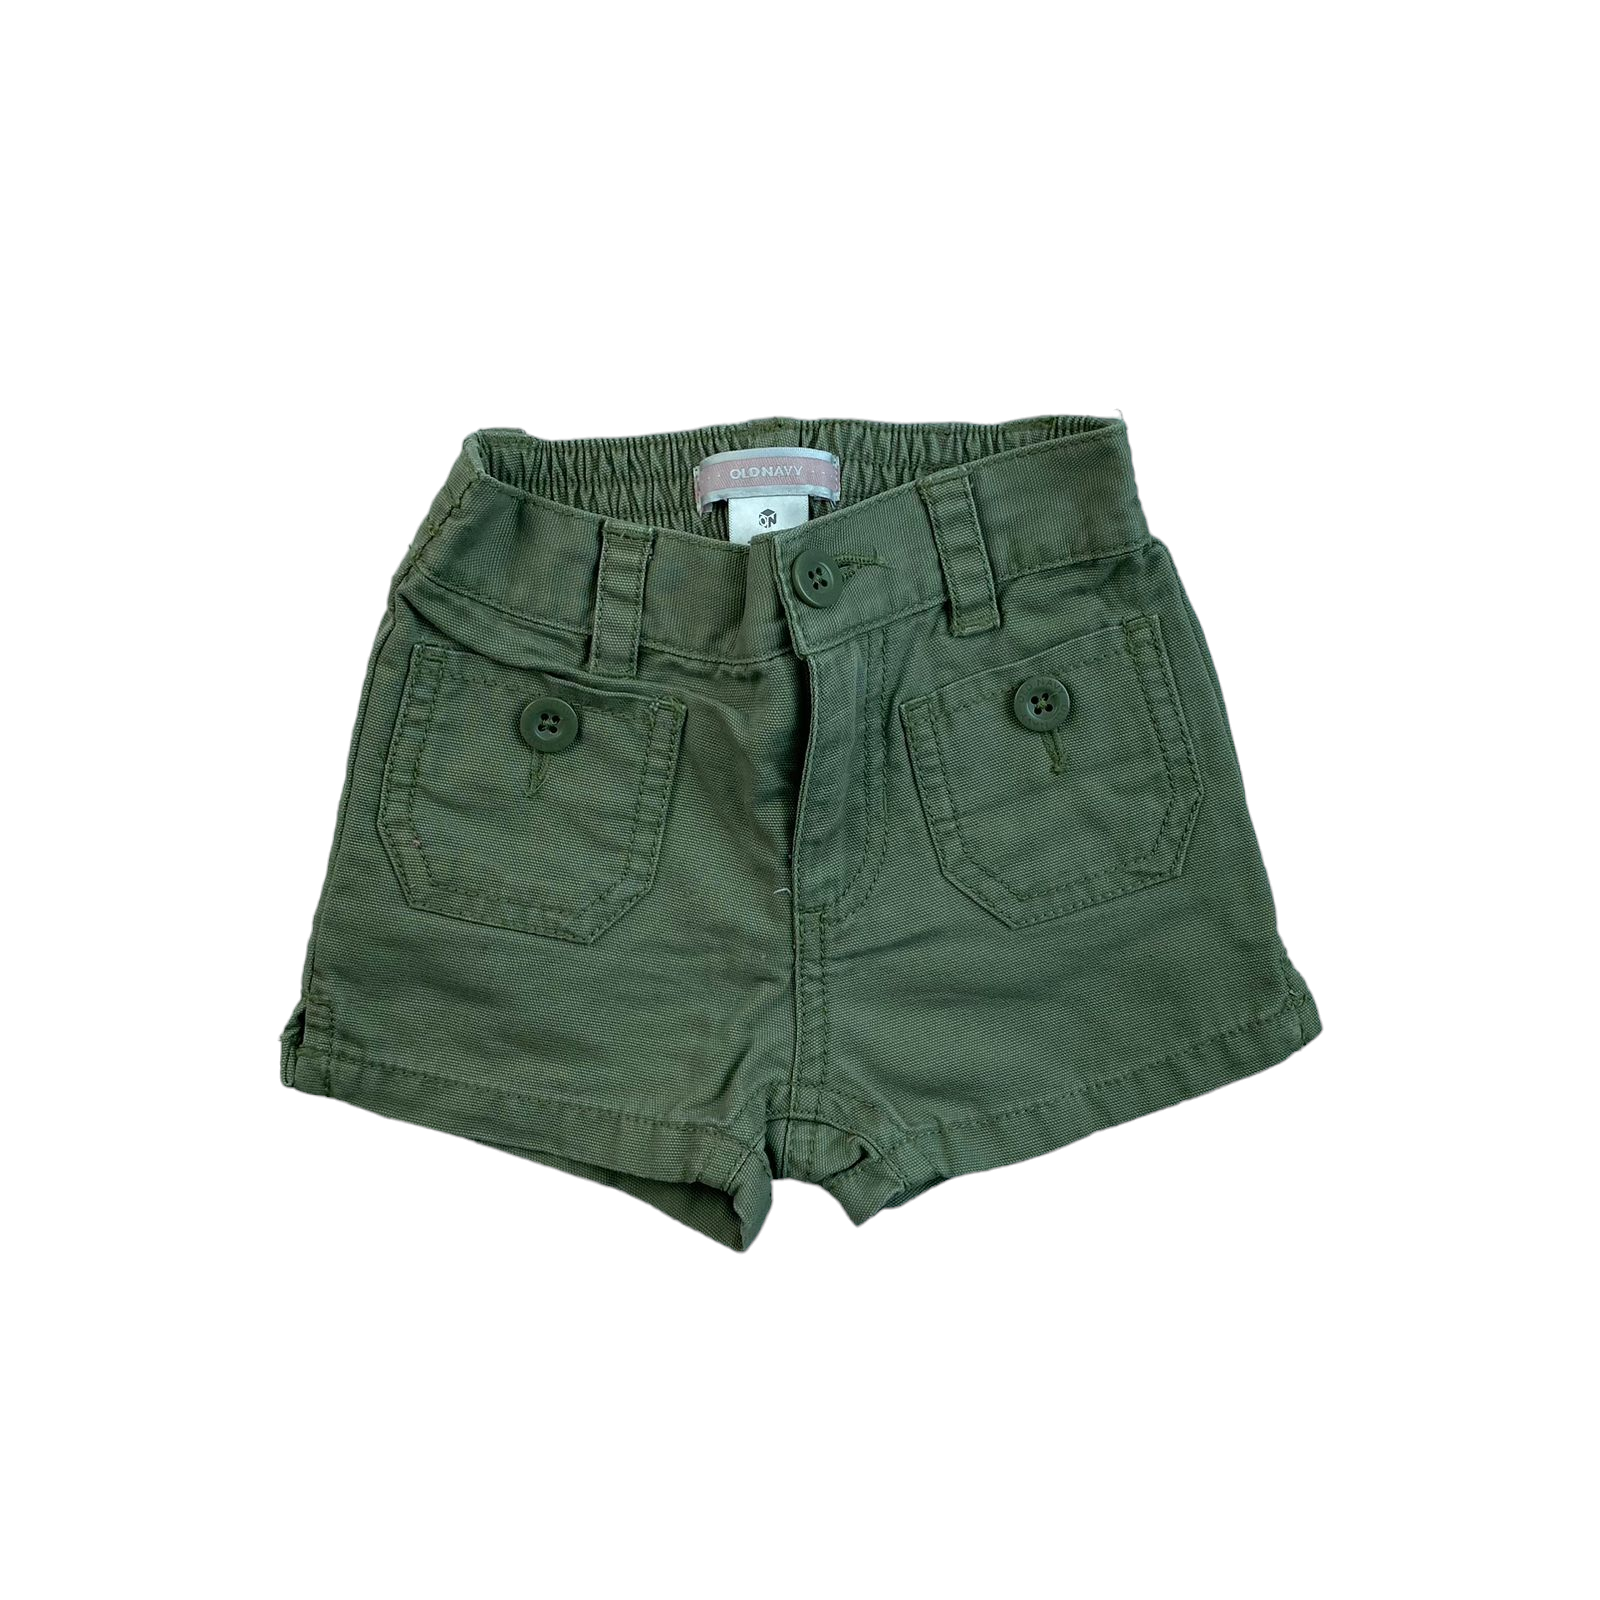 Short verde con bolsillos y elastico en la cintura